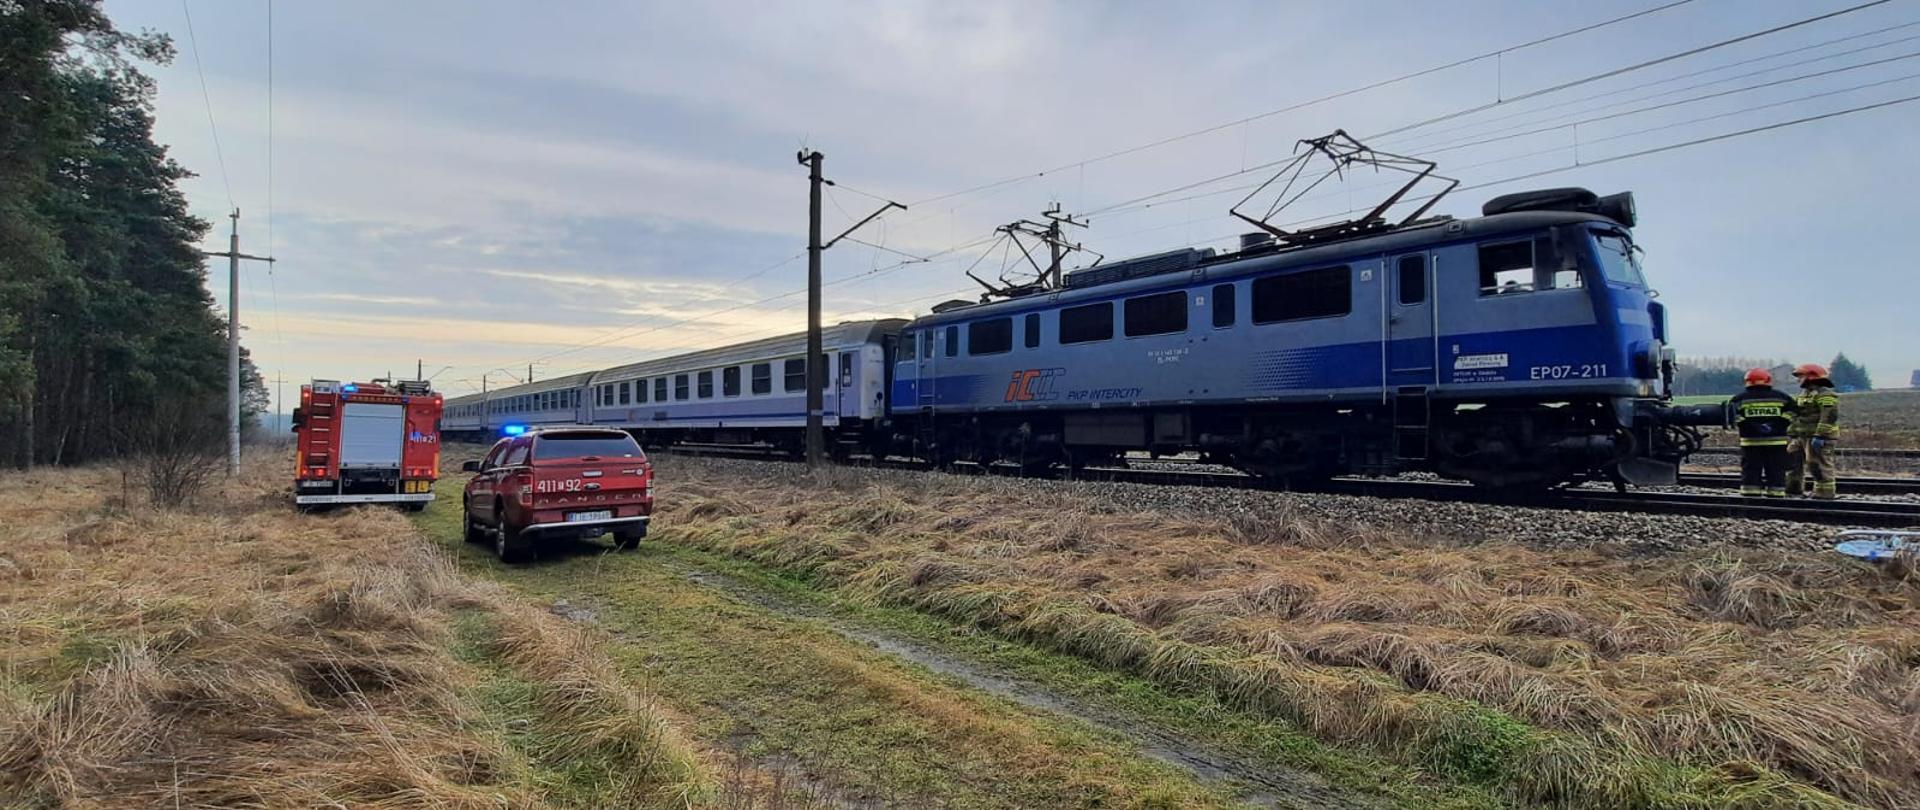 Na zdjęciu pociąg pasażerski TLK na torach kolejowych, samochód ratowniczo-gaśniczy oraz samochód operacyjny zaparkowane na polanie obok torów kolejowych.